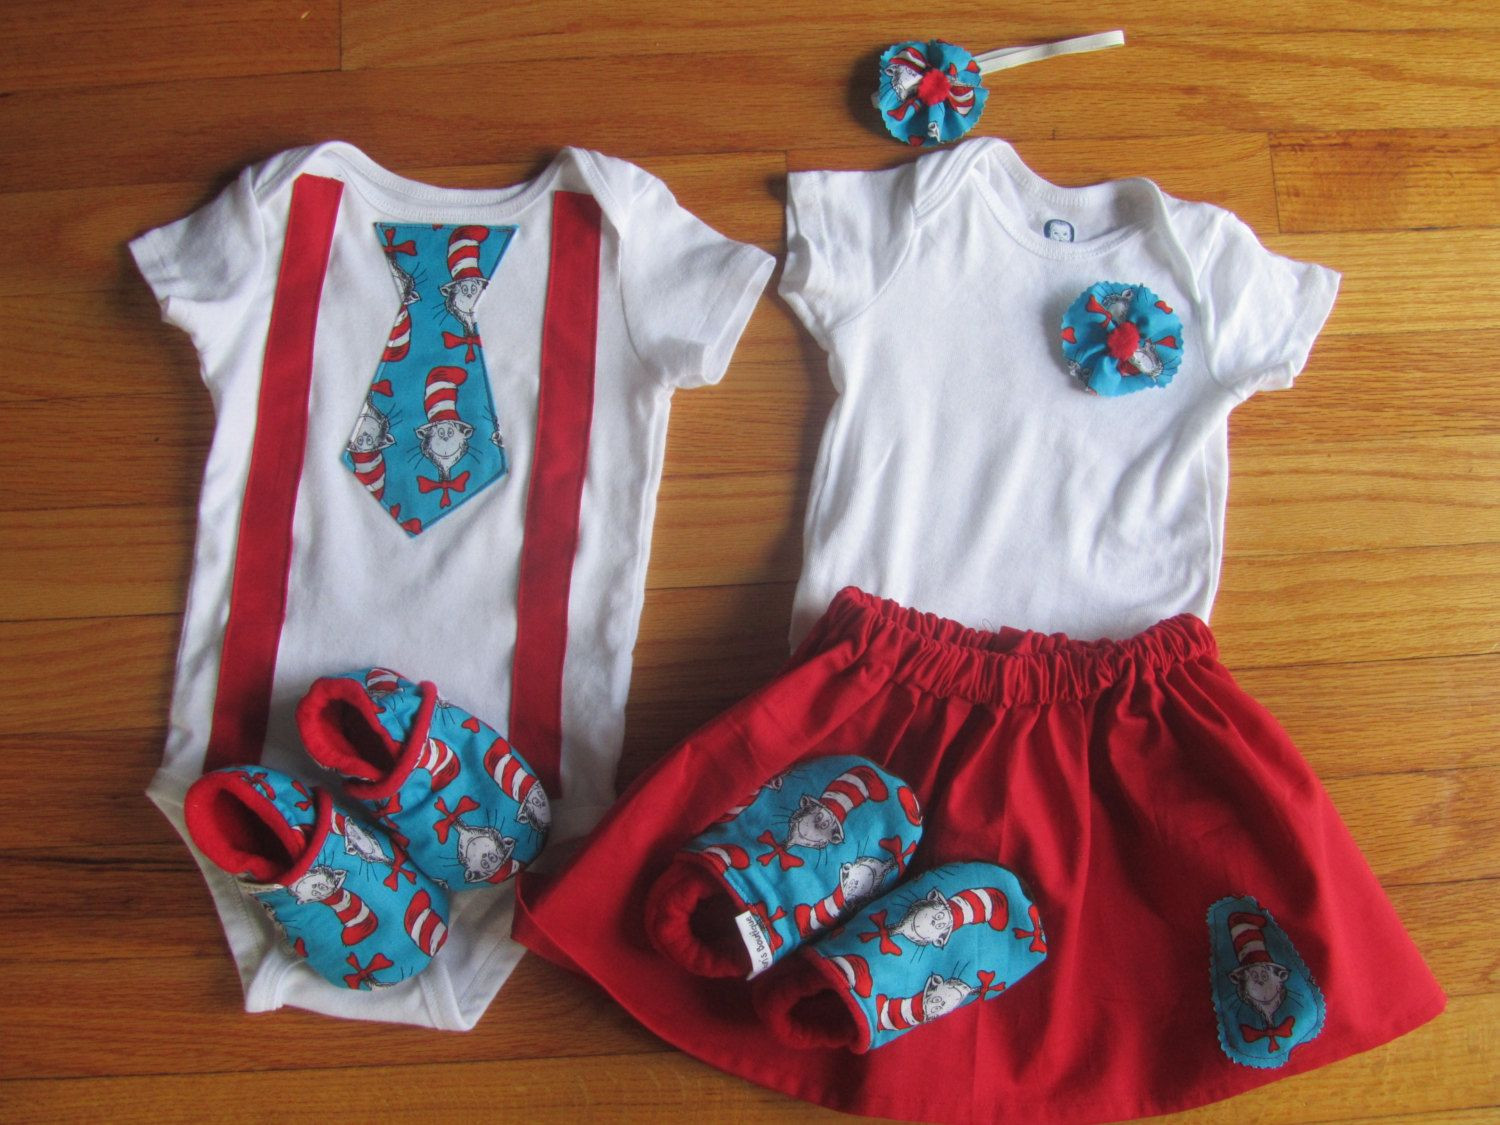 Twin Baby Boy Gift Ideas
 Best 25 Twin baby ts ideas on Pinterest